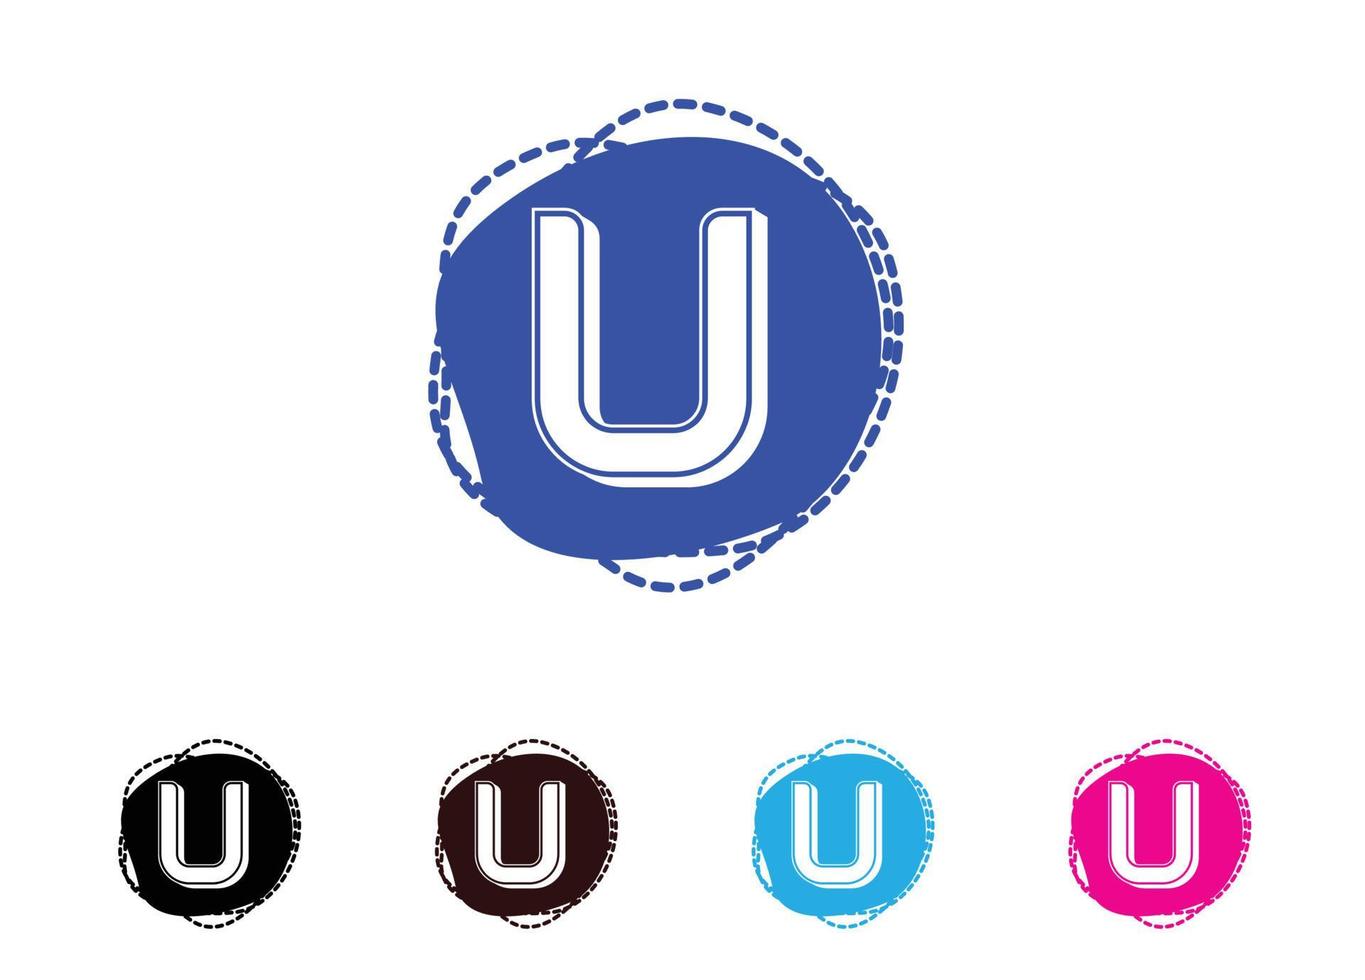 logo della lettera u e modello di progettazione dell'icona vettore